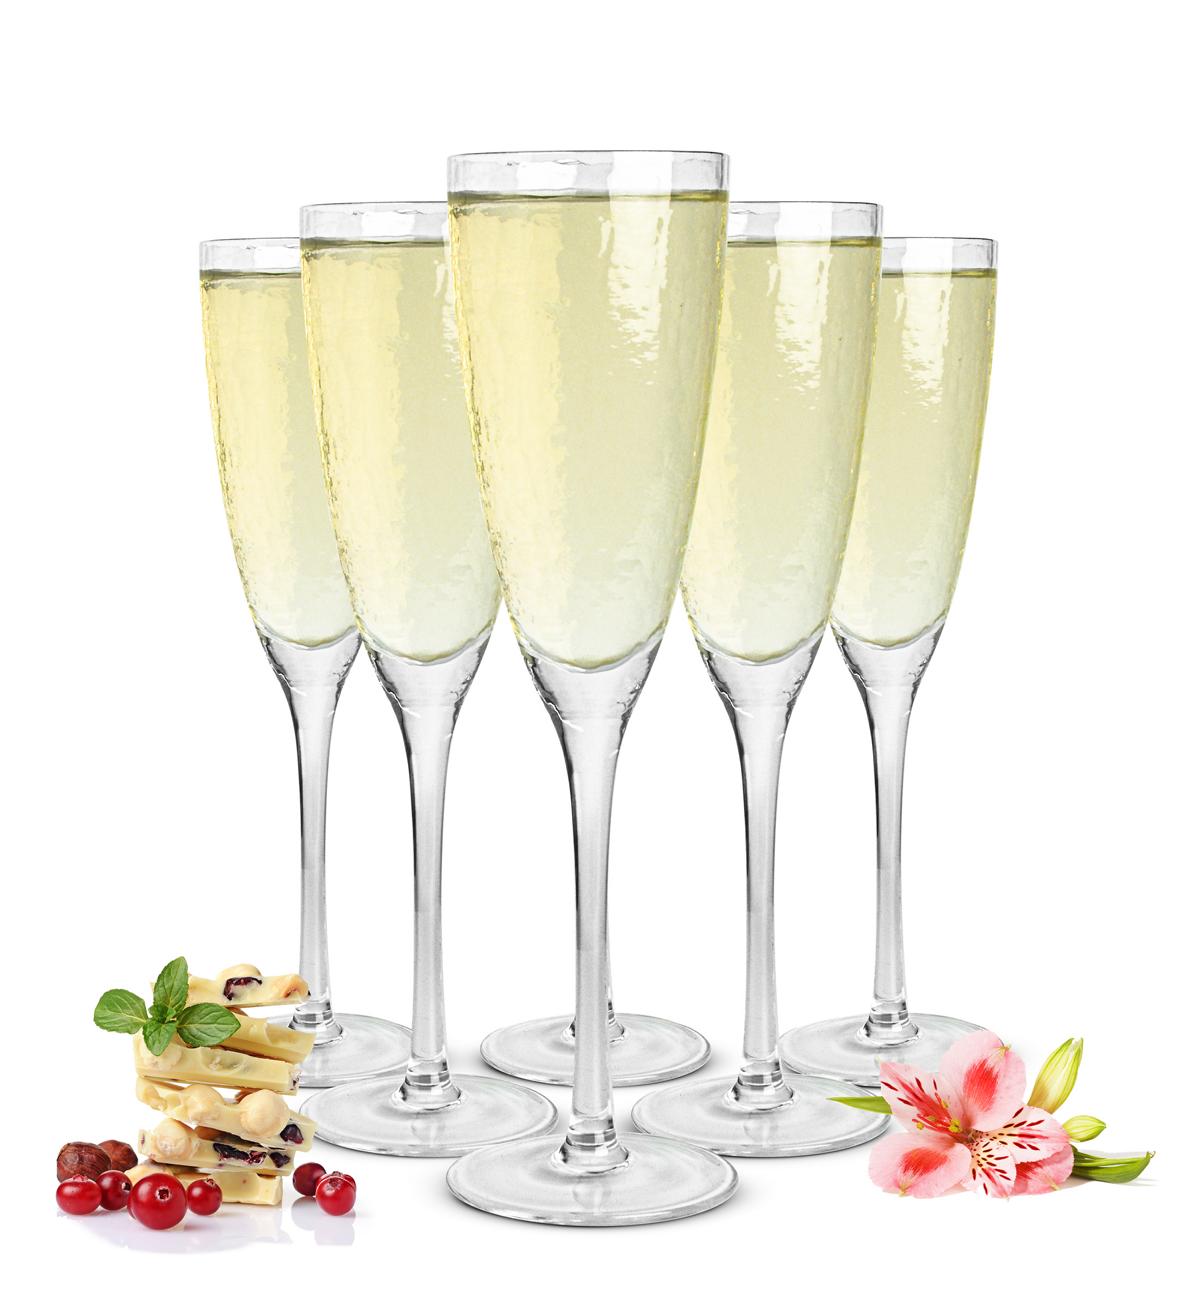 Verres à champagne faits main Sendez dans un pack de 6 verres à champagne verres à champagne Prosecco